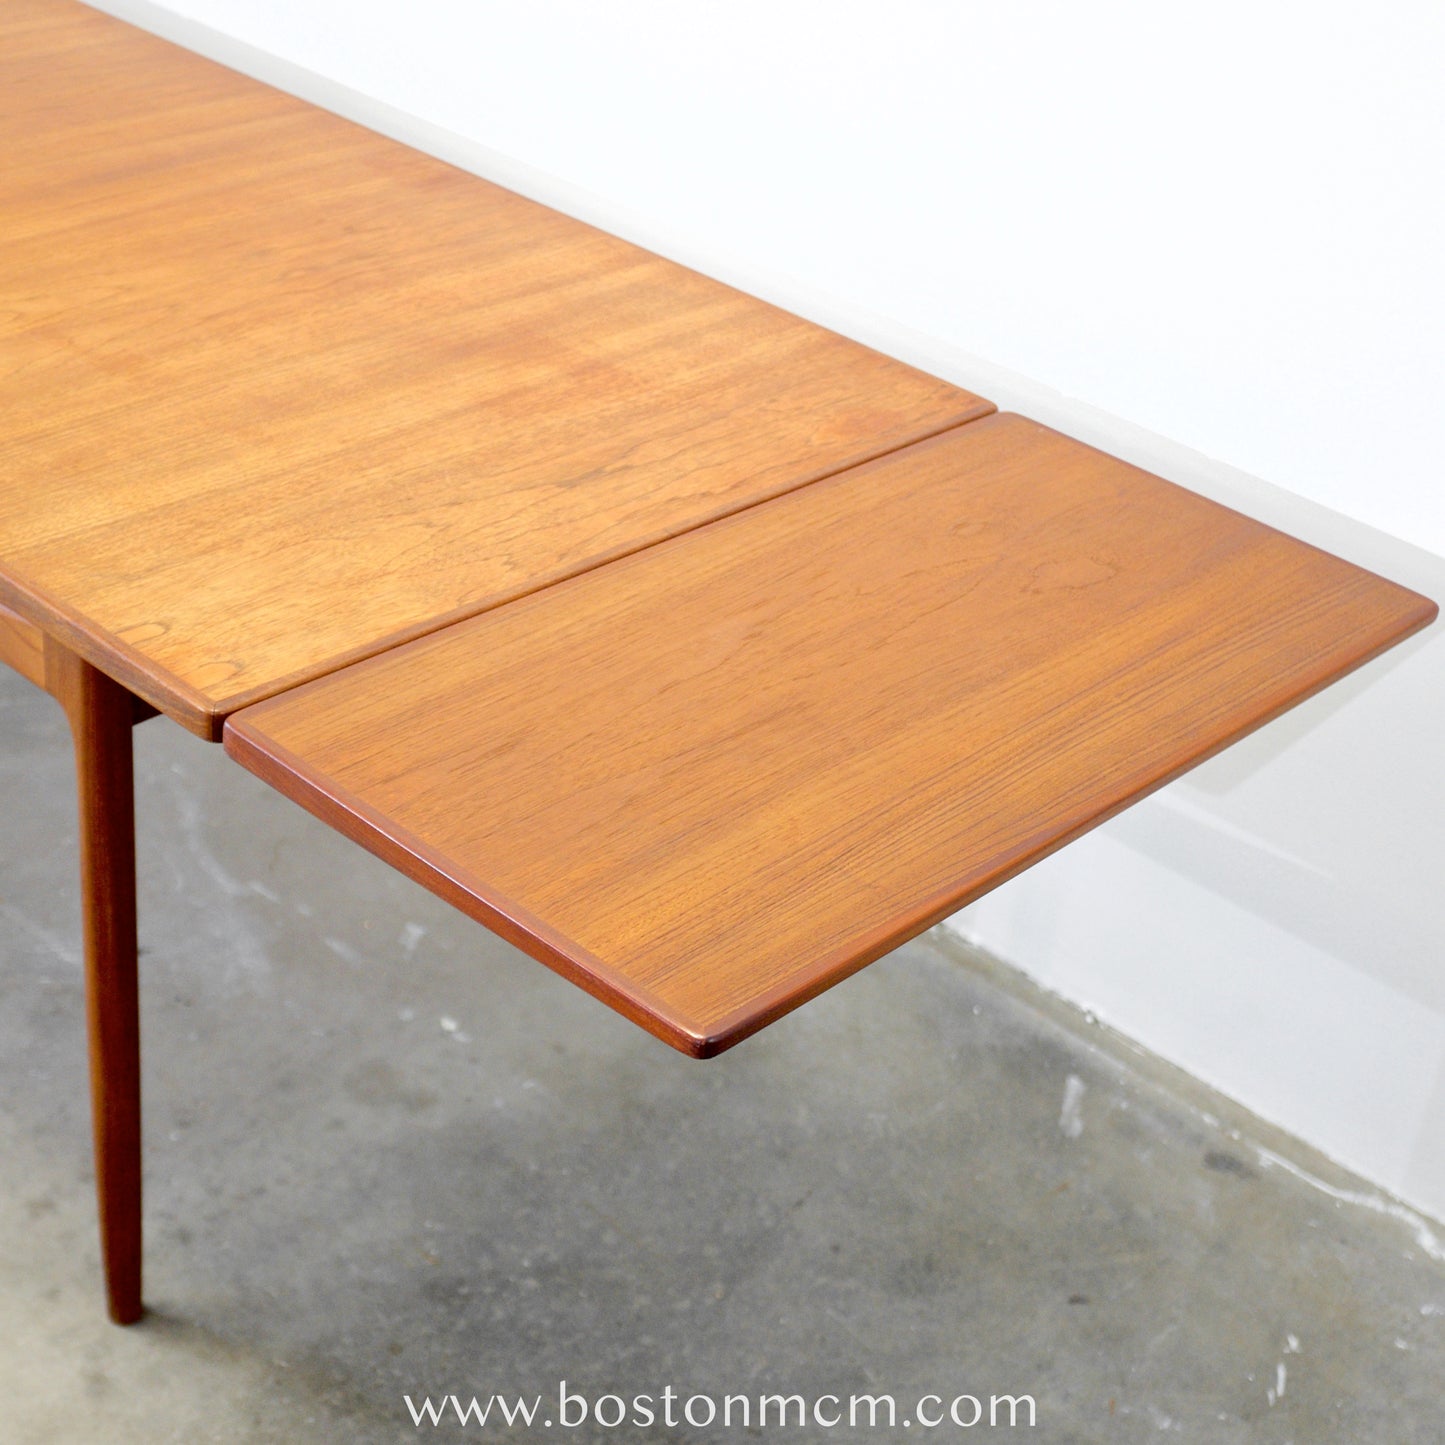 G-Plan Furniture "Danish Design" Teak Dining Table Designed by Ib Kofod-Larsen